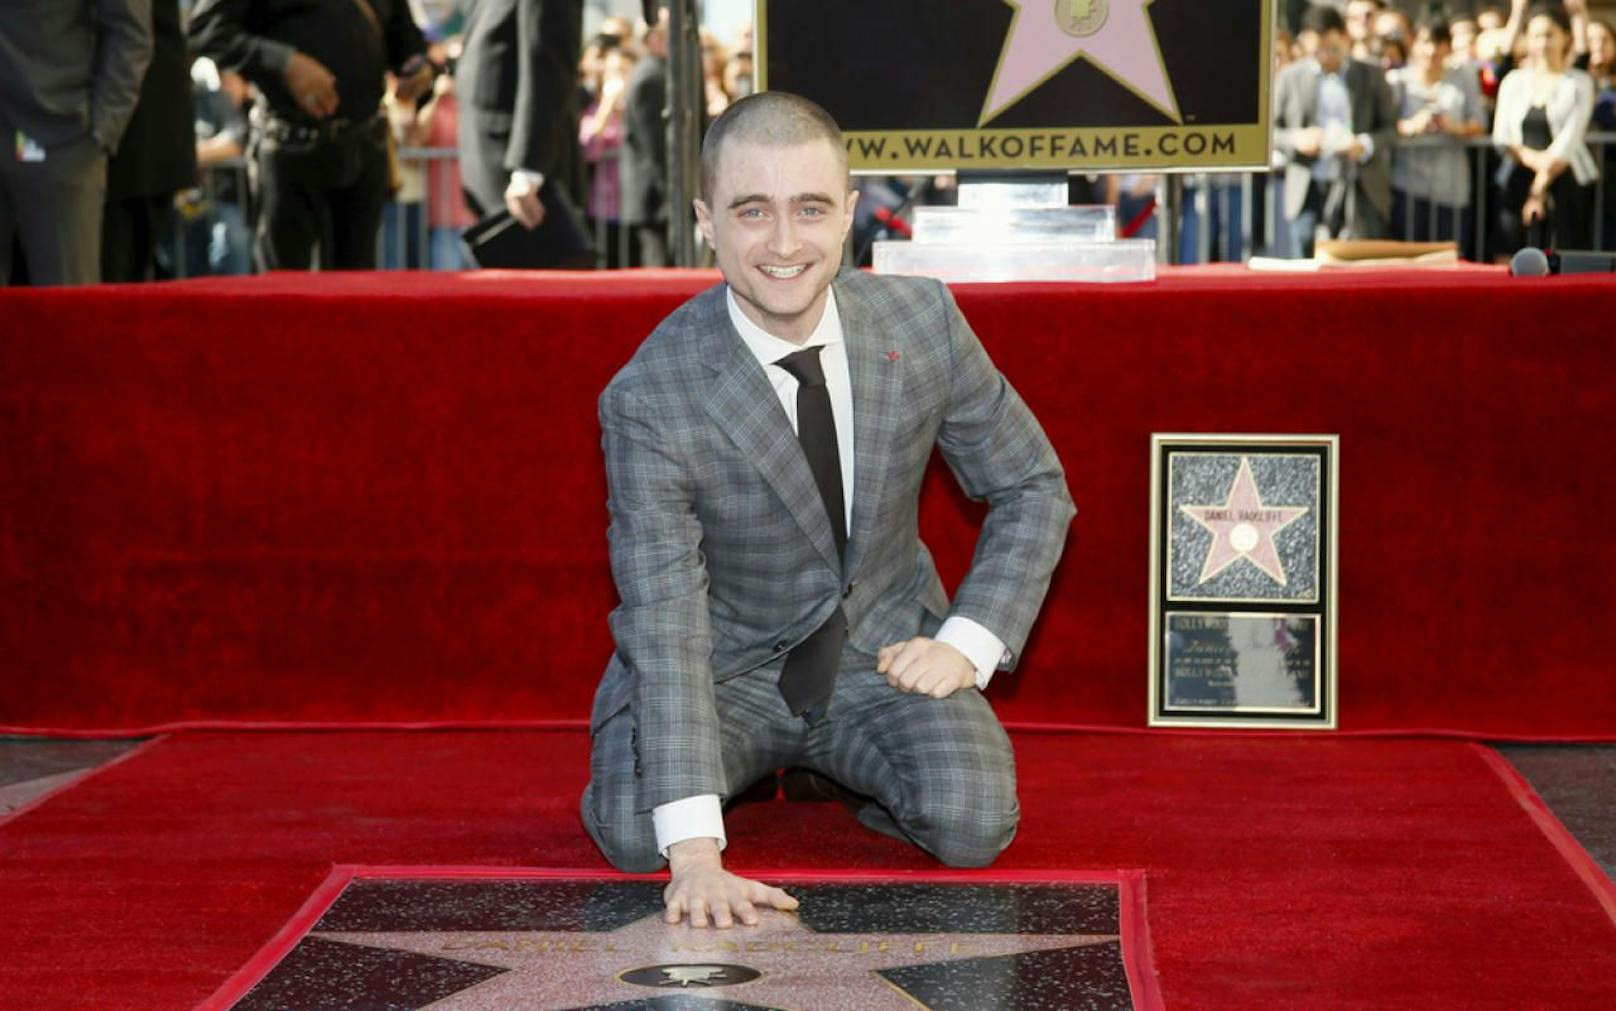 Echter Ruhm nach dem Stern auf dem &quot;Walk of Fame&quot;: Hollywood-Star Daniel Radcliffe (27) schlug in London zwei bewaffnete Räuber in die Flucht. 